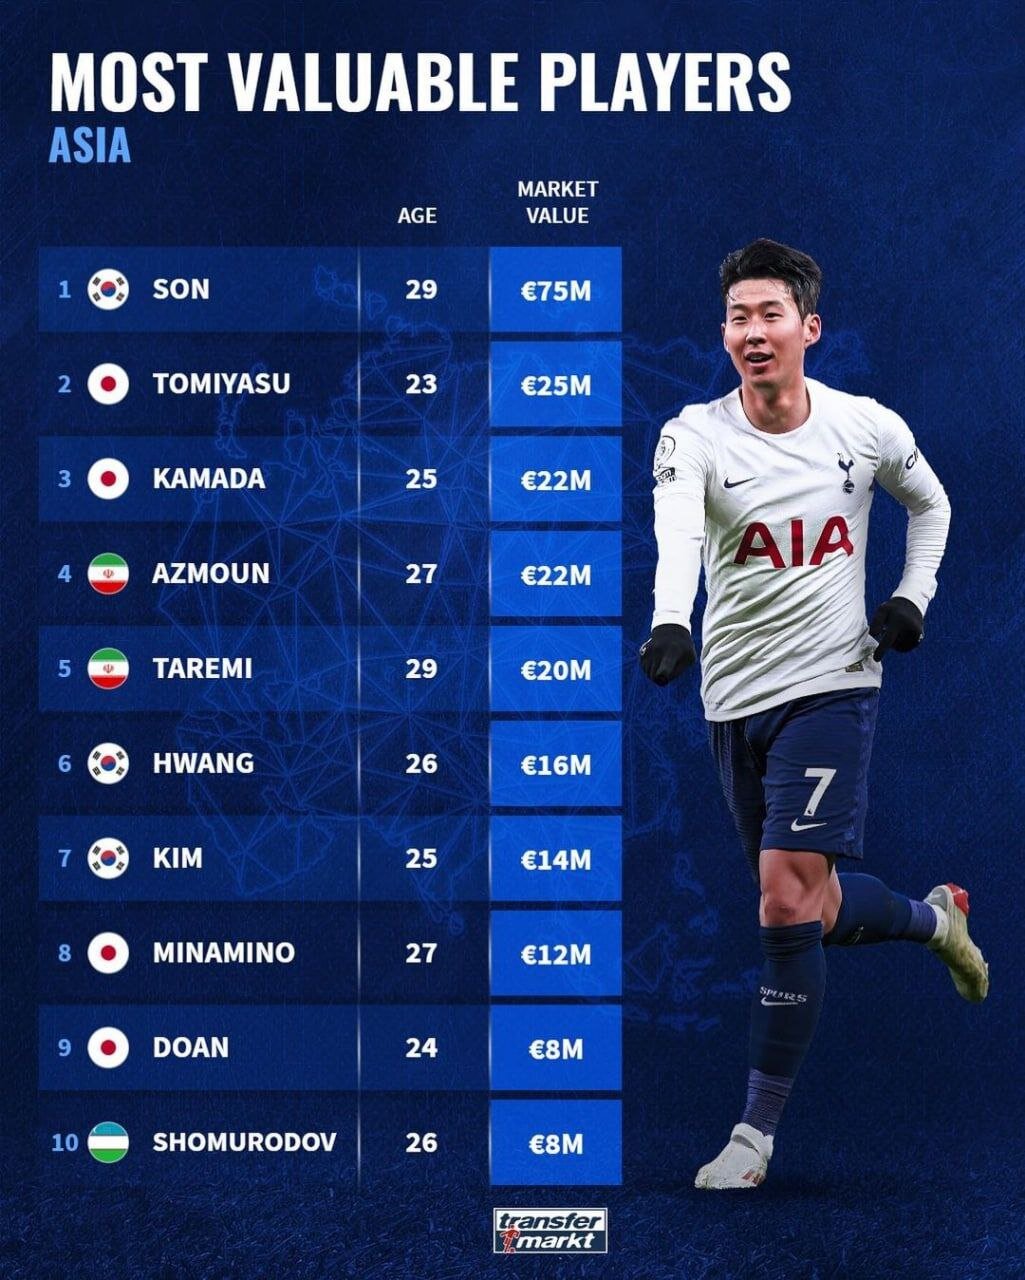 آزمون و طارمی در رده چهارم و پنجم ارزشمندترین بازیکنان آسیا